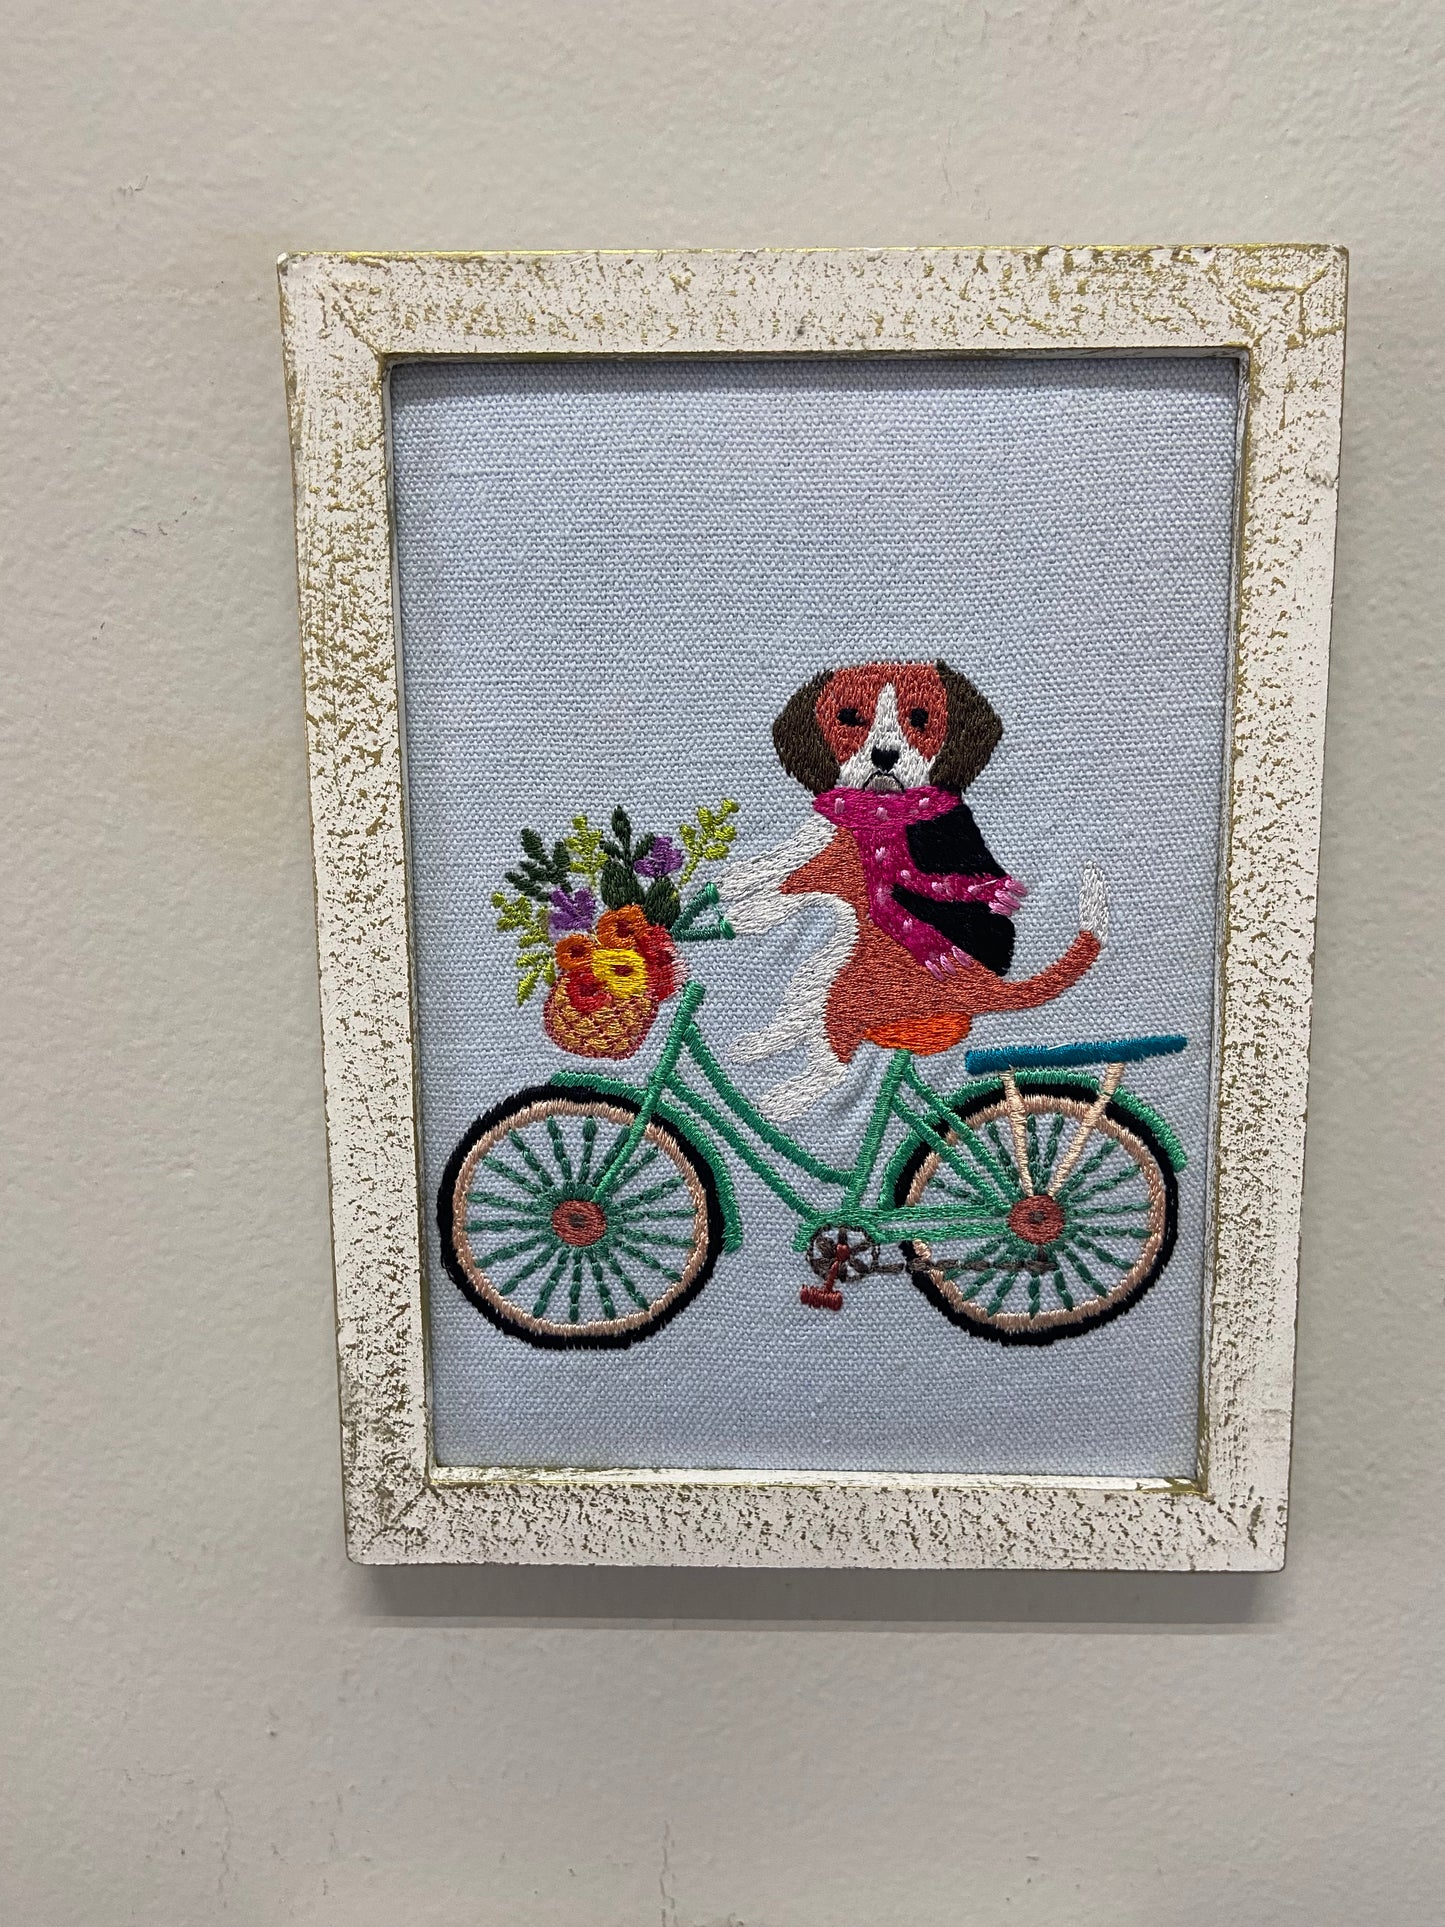 Embroidered Animal prints